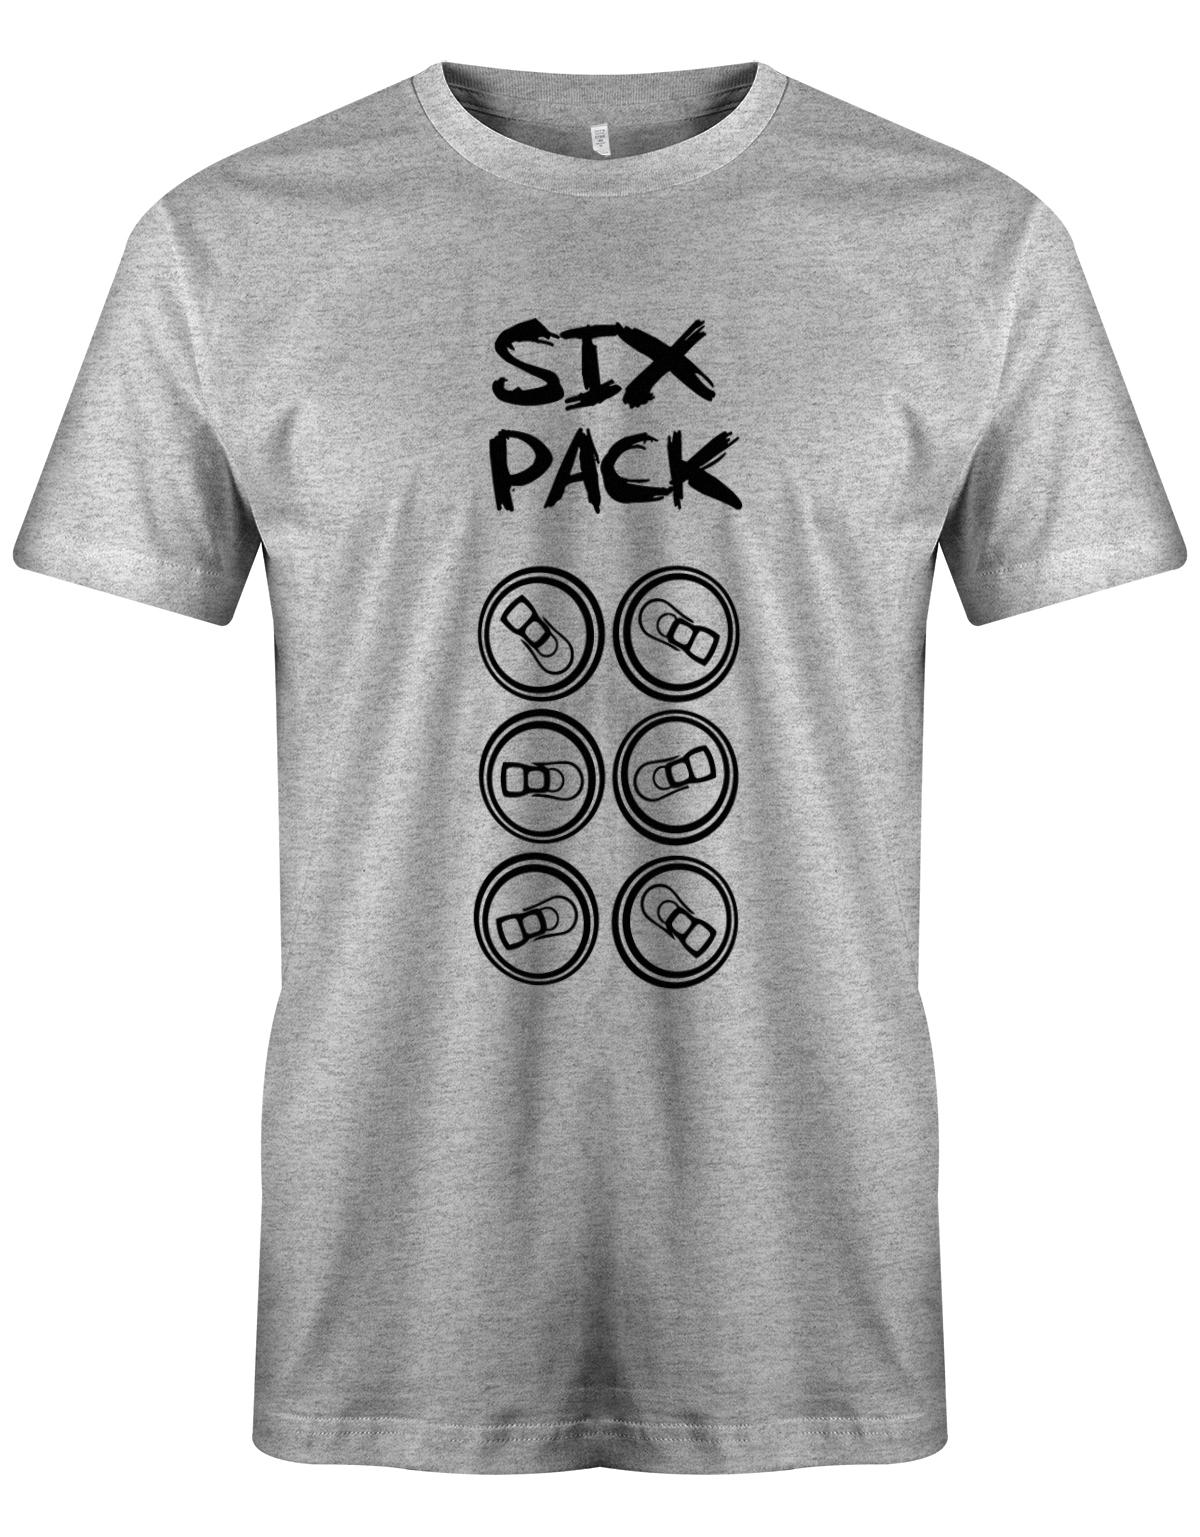 Sixpack-Bierdosen-Herren-Shirt-Grau